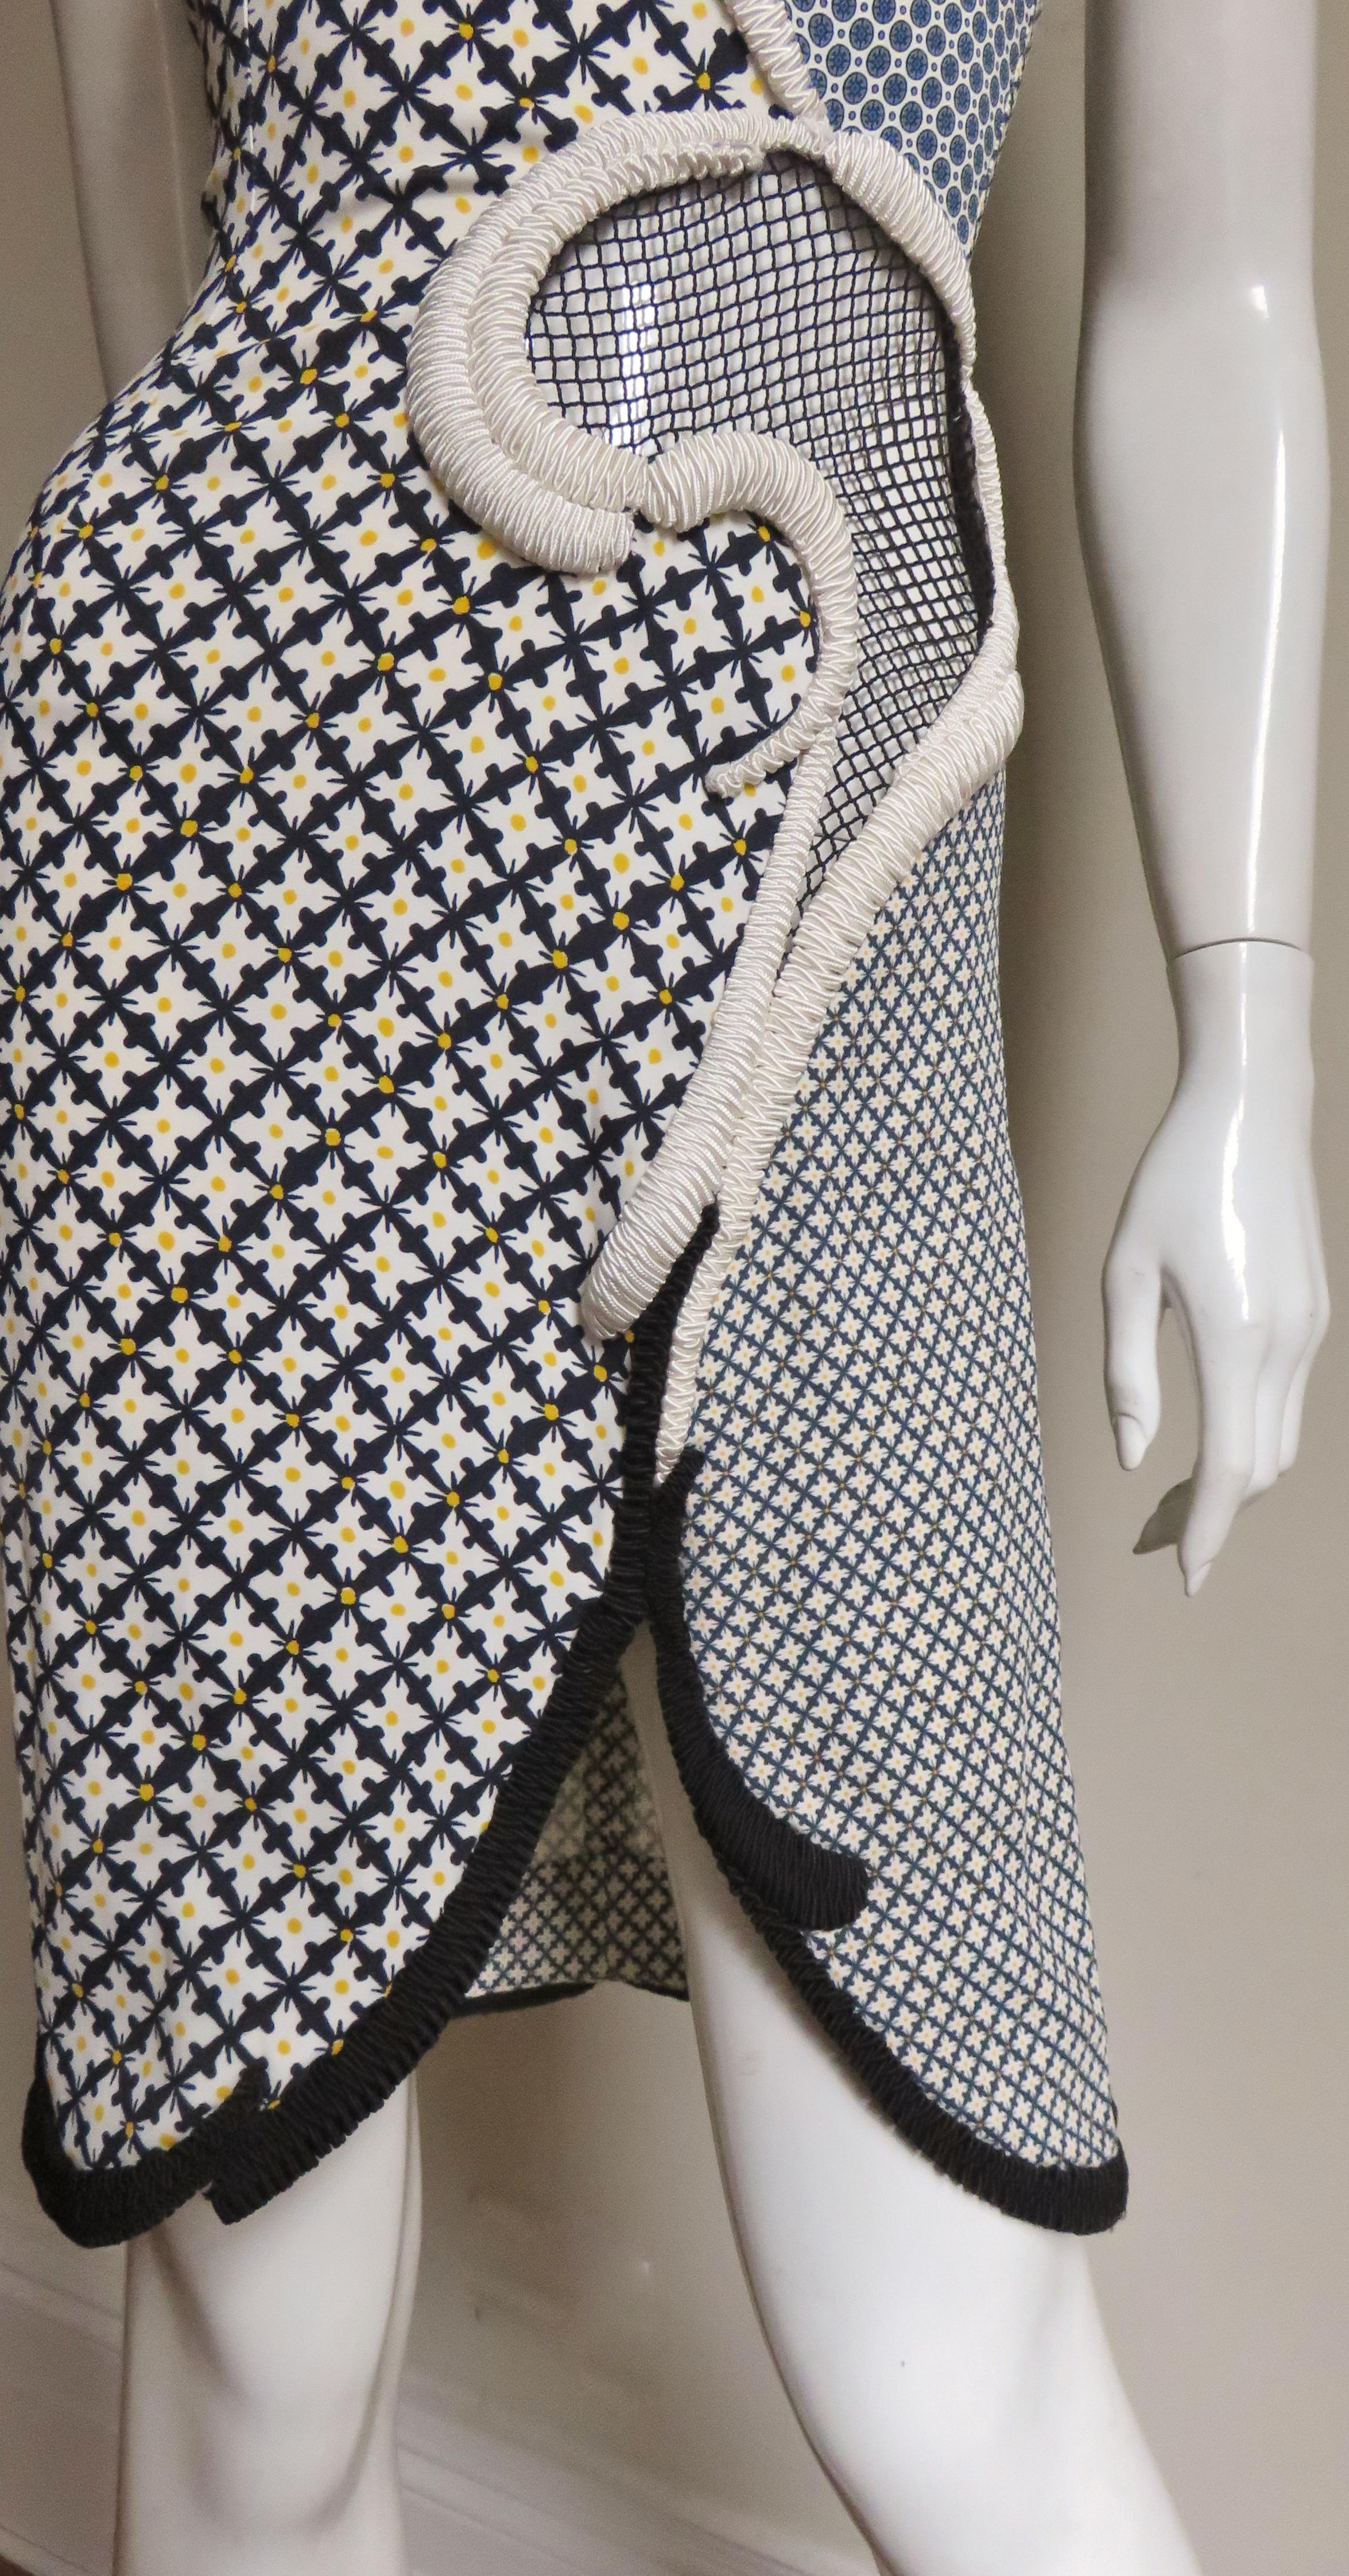 Stella McCartney Neues Kleid mit gemischten Mustern für die Anzeigenkampagne 4